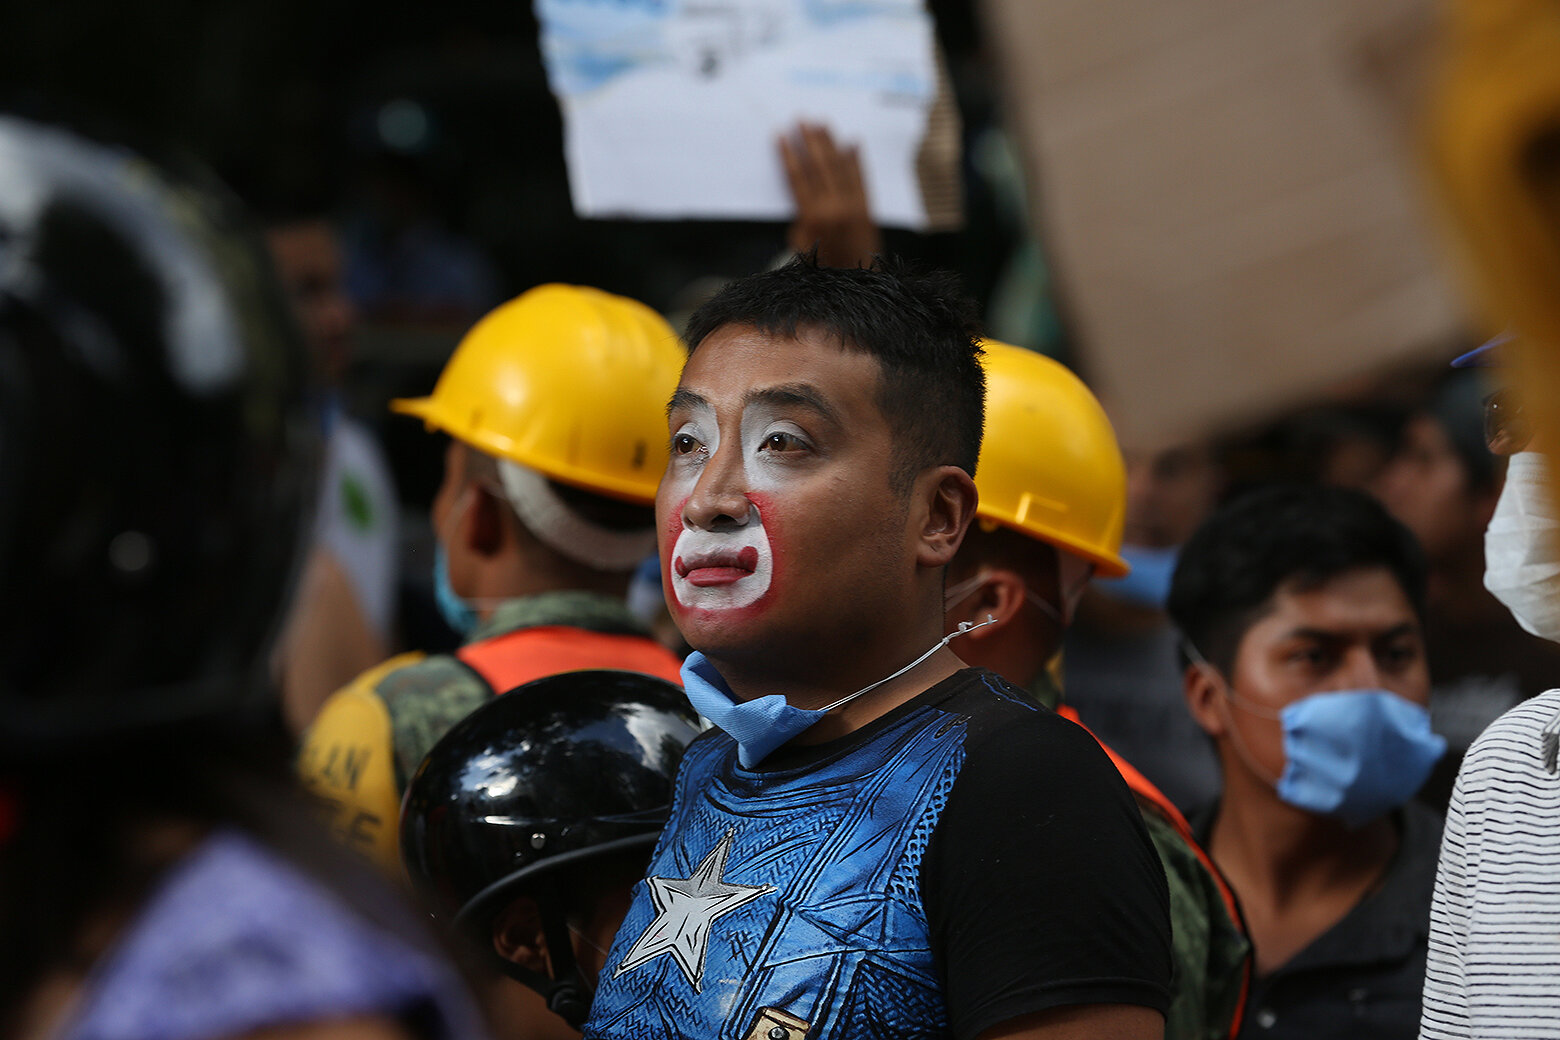 <p>Уличный клоун пришел, чтобы помочь разбору завалов и поиску людей в рухнувшем здании после землетрясения в Мехико</p>

<p>&nbsp;</p>